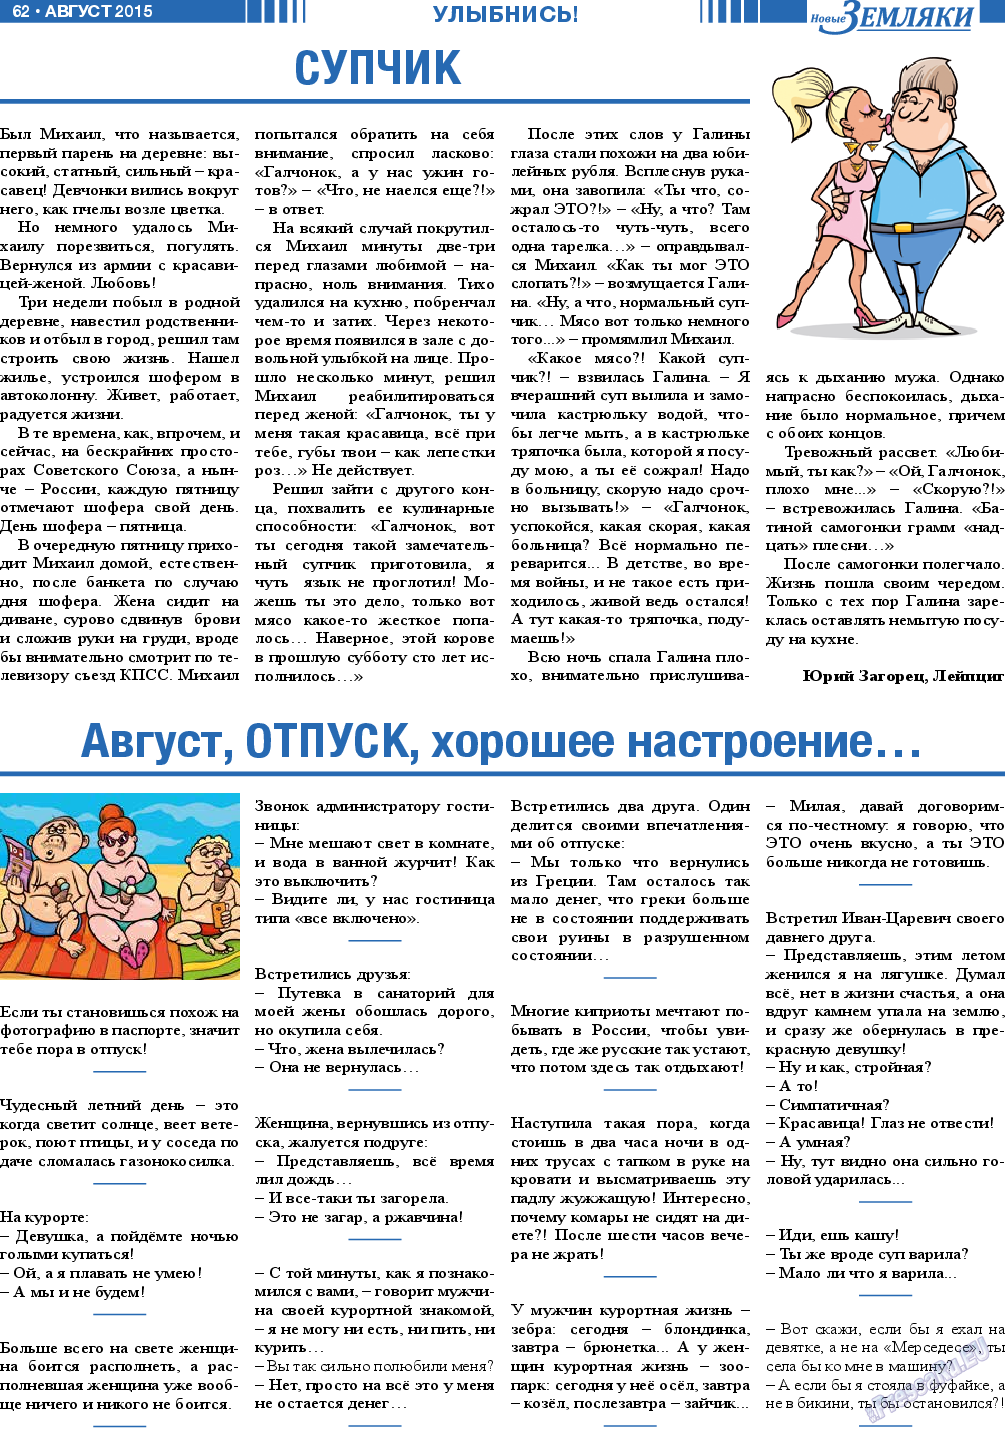 Новые Земляки (газета). 2015 год, номер 8, стр. 62